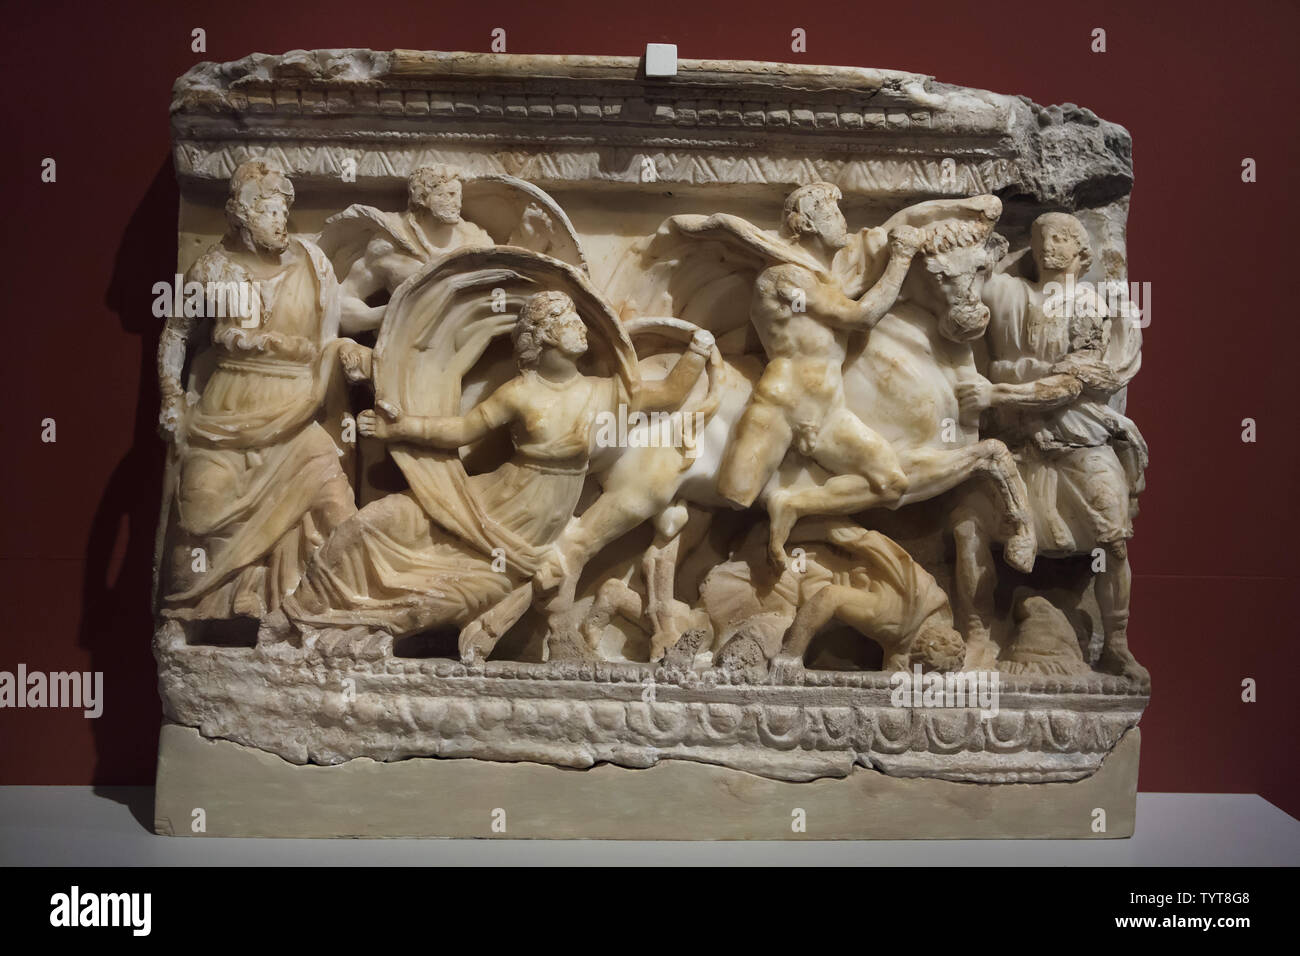 Punition de Dirce par les frères Amphion et Zethus représenté sur le devant de l'urne cinéraire étrusque datant de l'albâtre autour de 120-110 BC trouvés à Volterra, Italie, maintenant exposée dans l'Altes Museum de Berlin, Allemagne. Banque D'Images